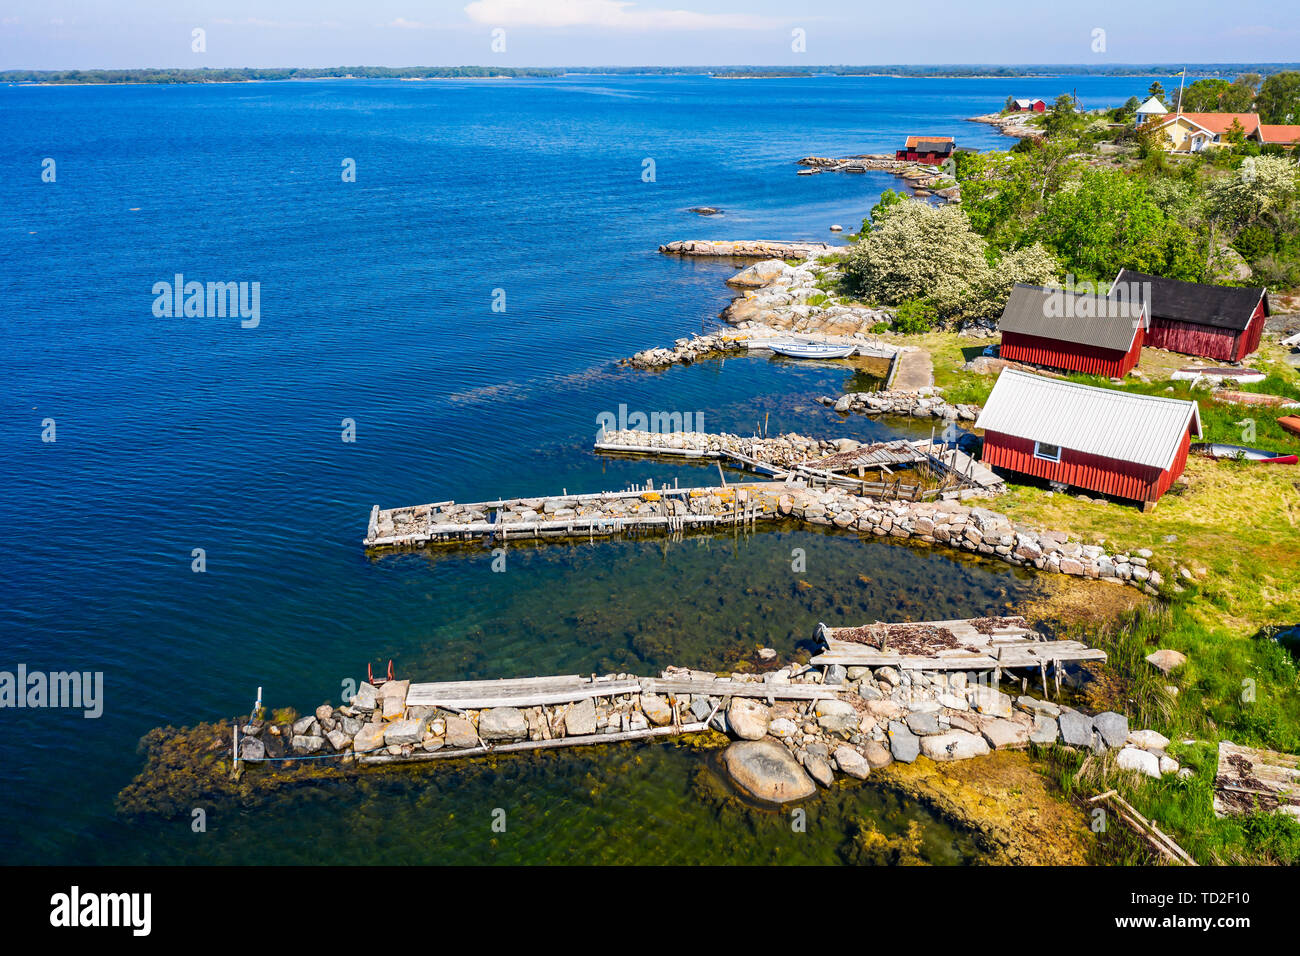 Campamento de pesca tradicional, típico de la costa sueca con embarcaderos de piedra y de madera pequeños cobertizos de pesca. Ubicación Isla Hasslo en Blekinge archipela Foto de stock